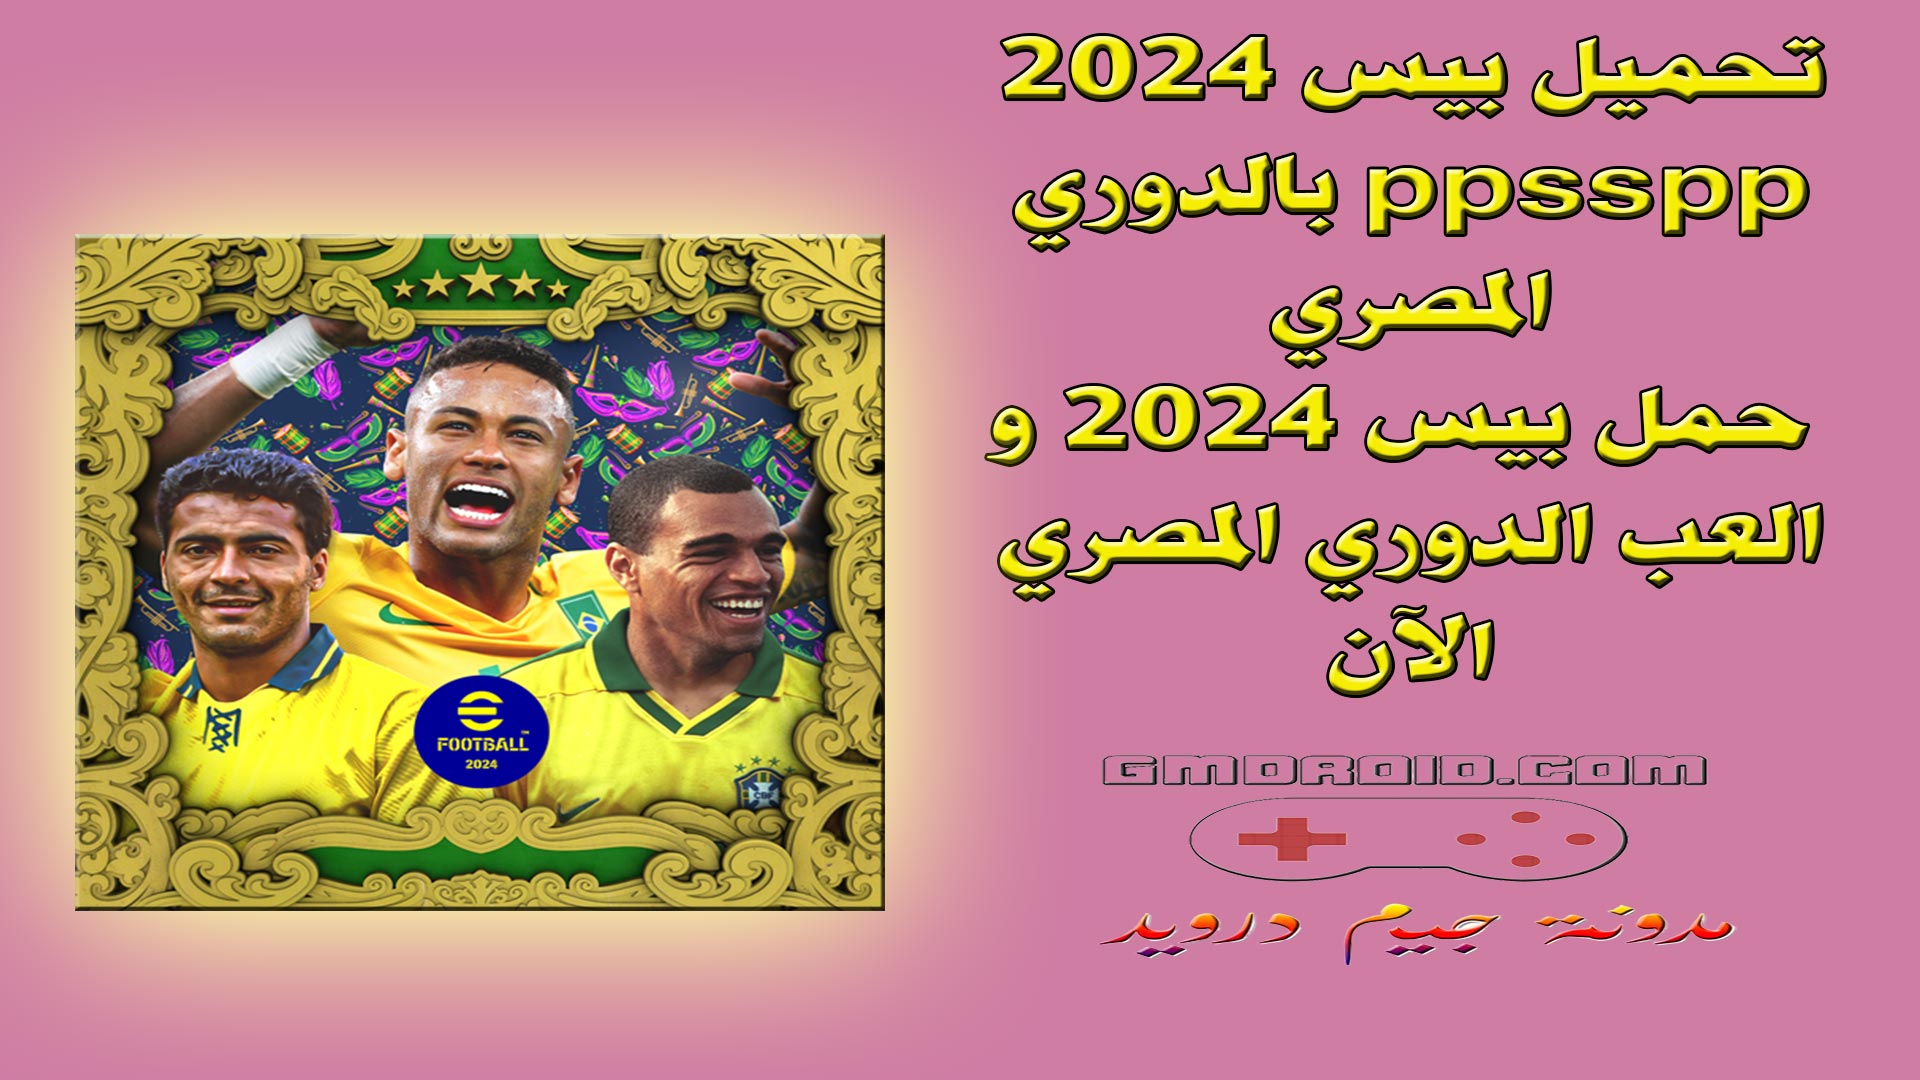 تحميل بيس 2024 ppsspp بالدوري المصري - حمل بيس 2024 و العب الدوري المصري الآن